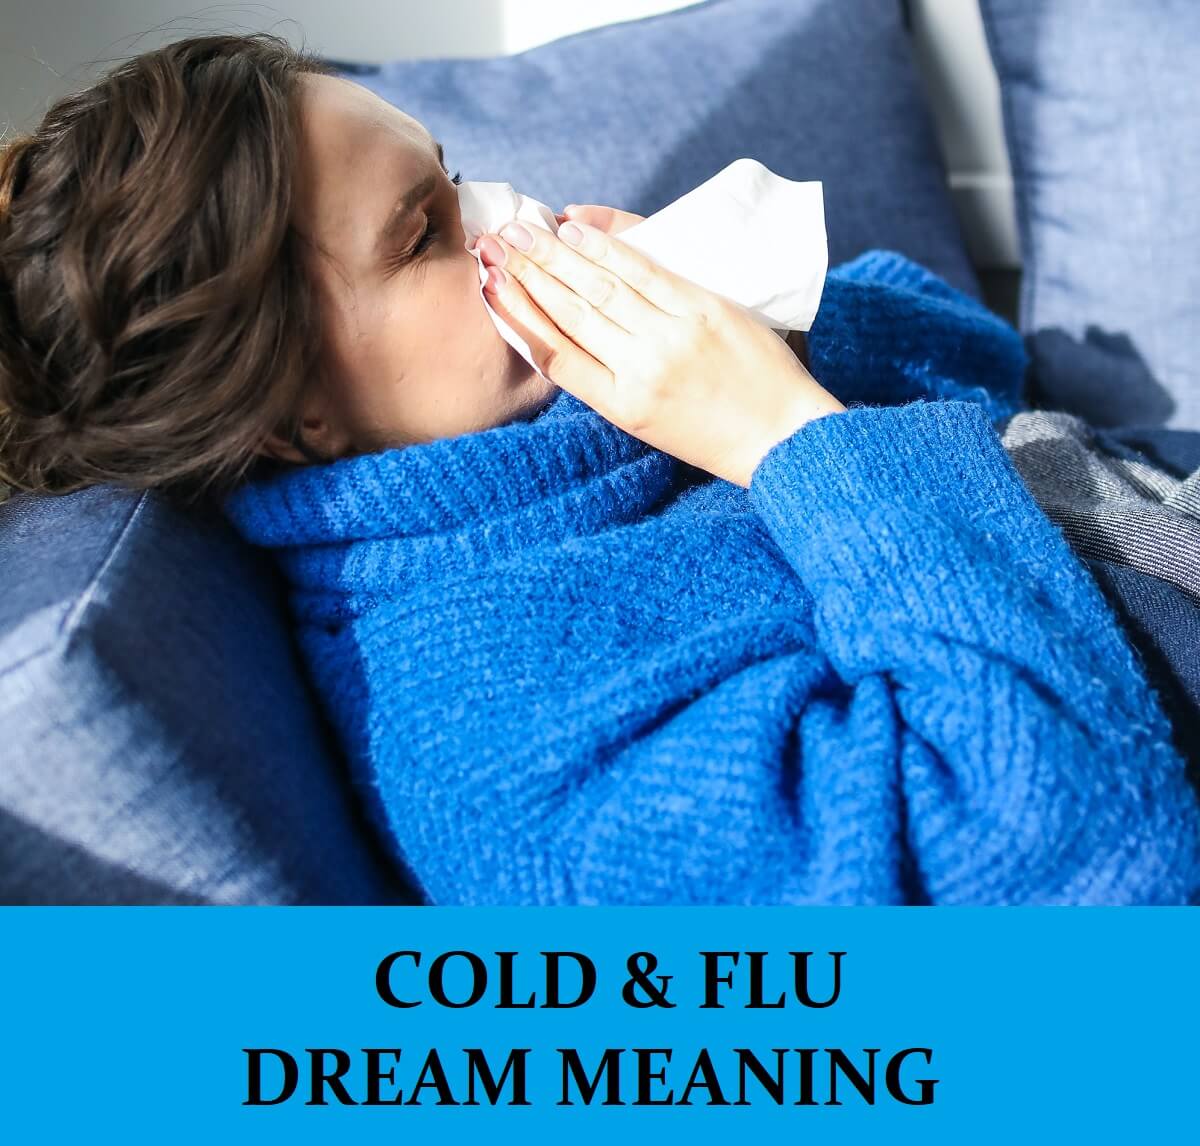 Dream About Flu